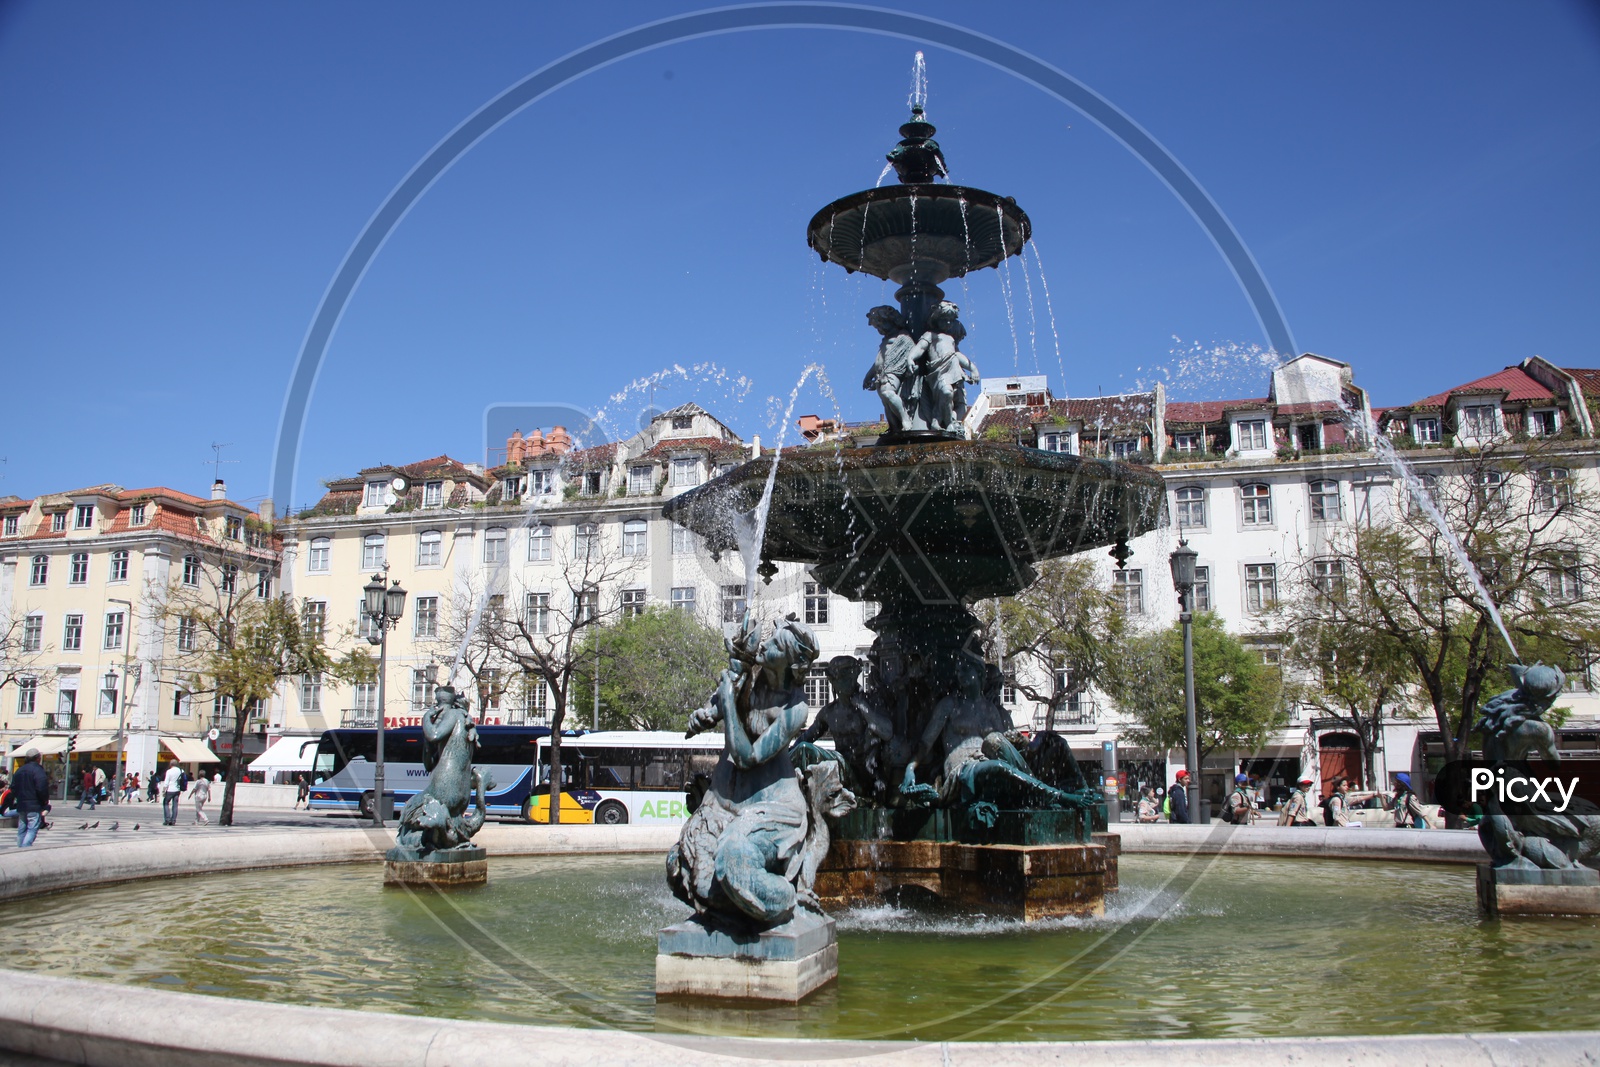 Rossio square in Lisbon